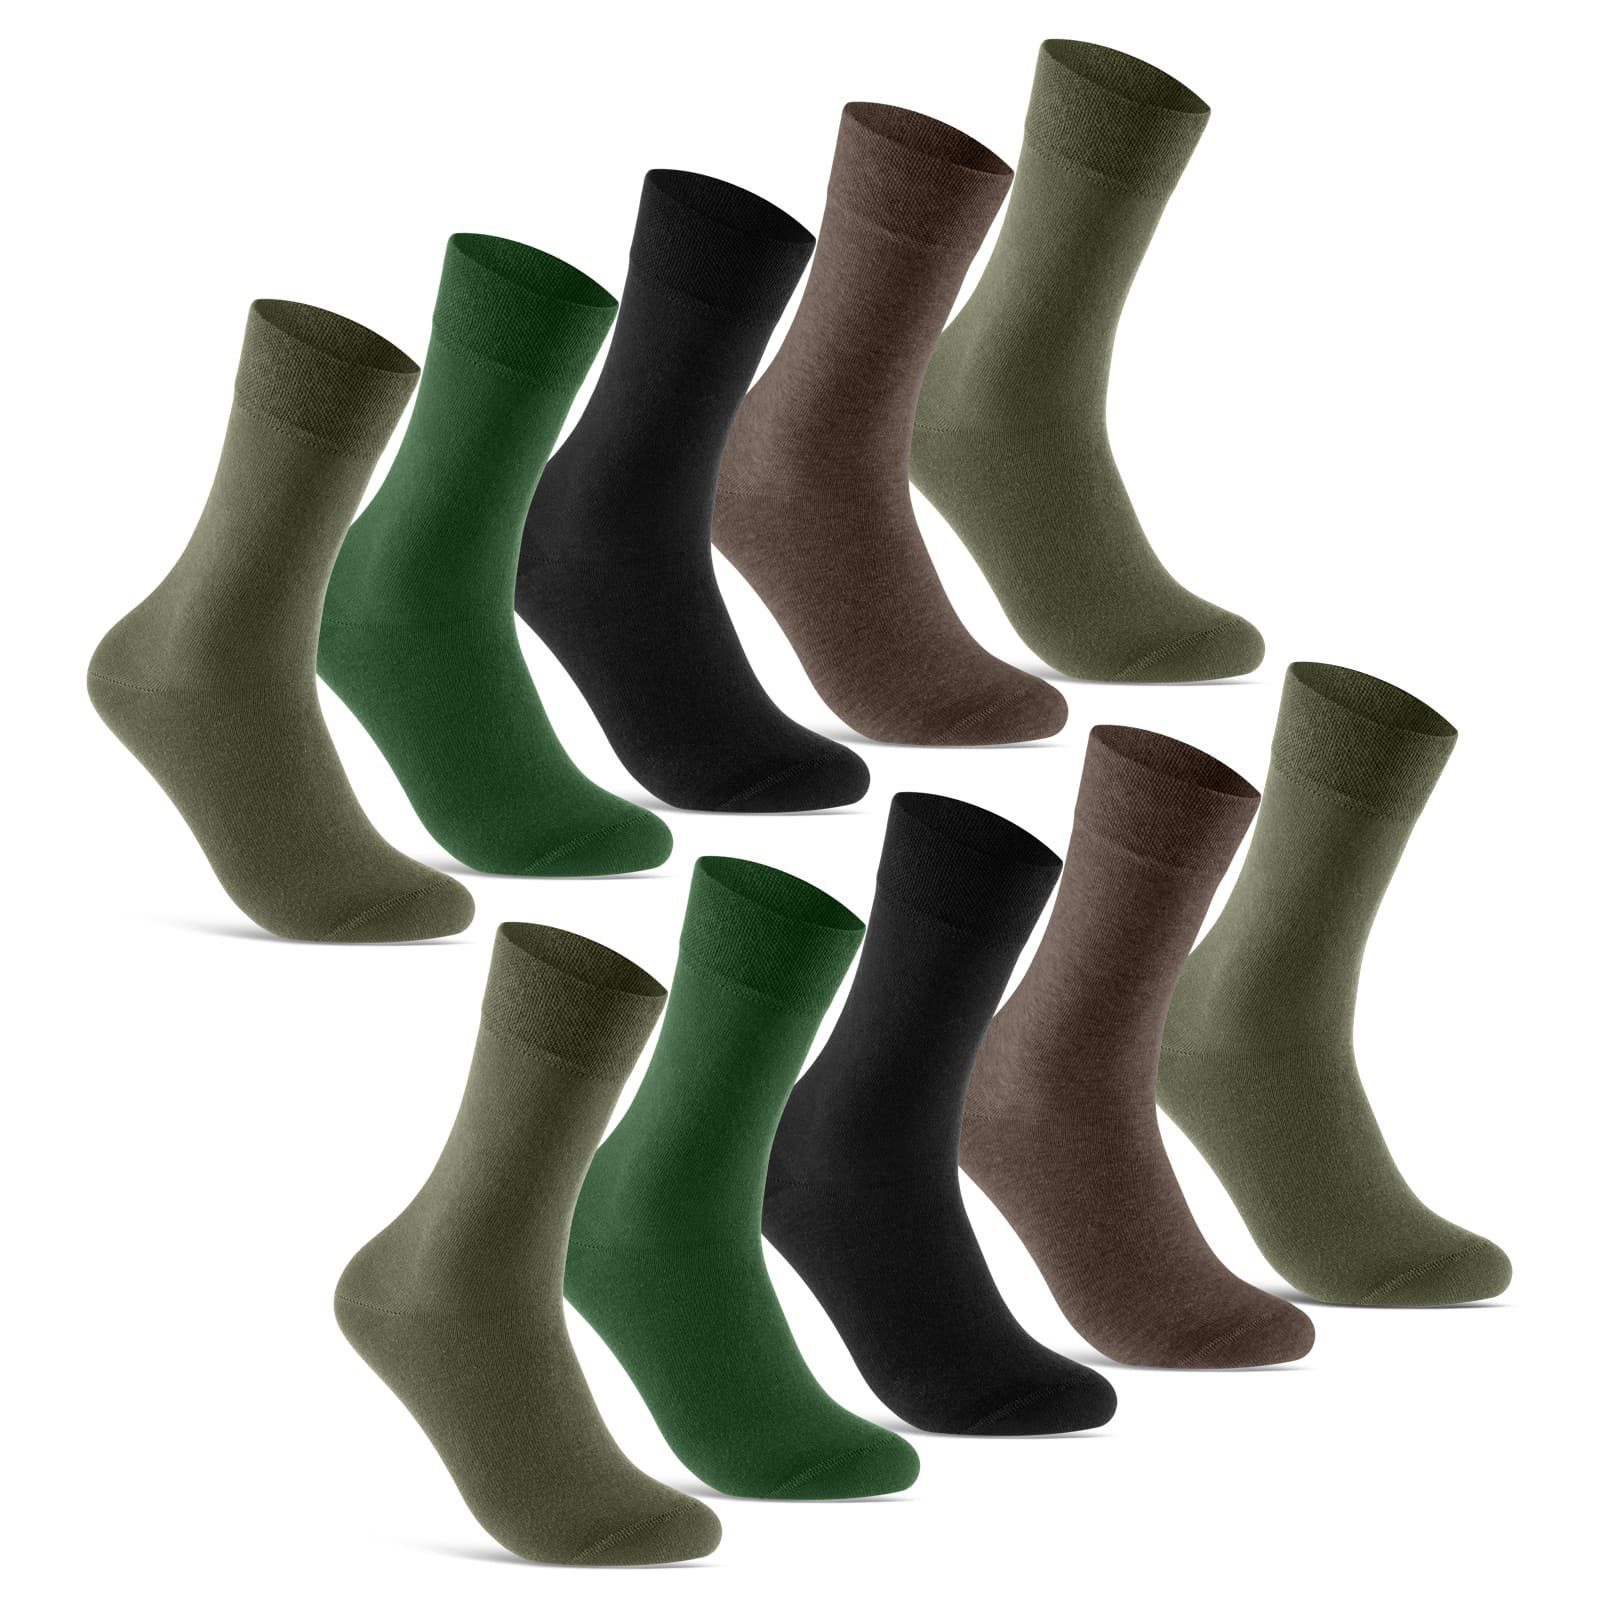 sockenkauf24 Socken 10 Paar Premium Socken Herren & Damen Komfort Business-Socken (Grün/Braun, 10-Paar, 43-46) aus gekämmter Baumwolle mit Pique-Bund (Exclusive Line) - 70101T WP